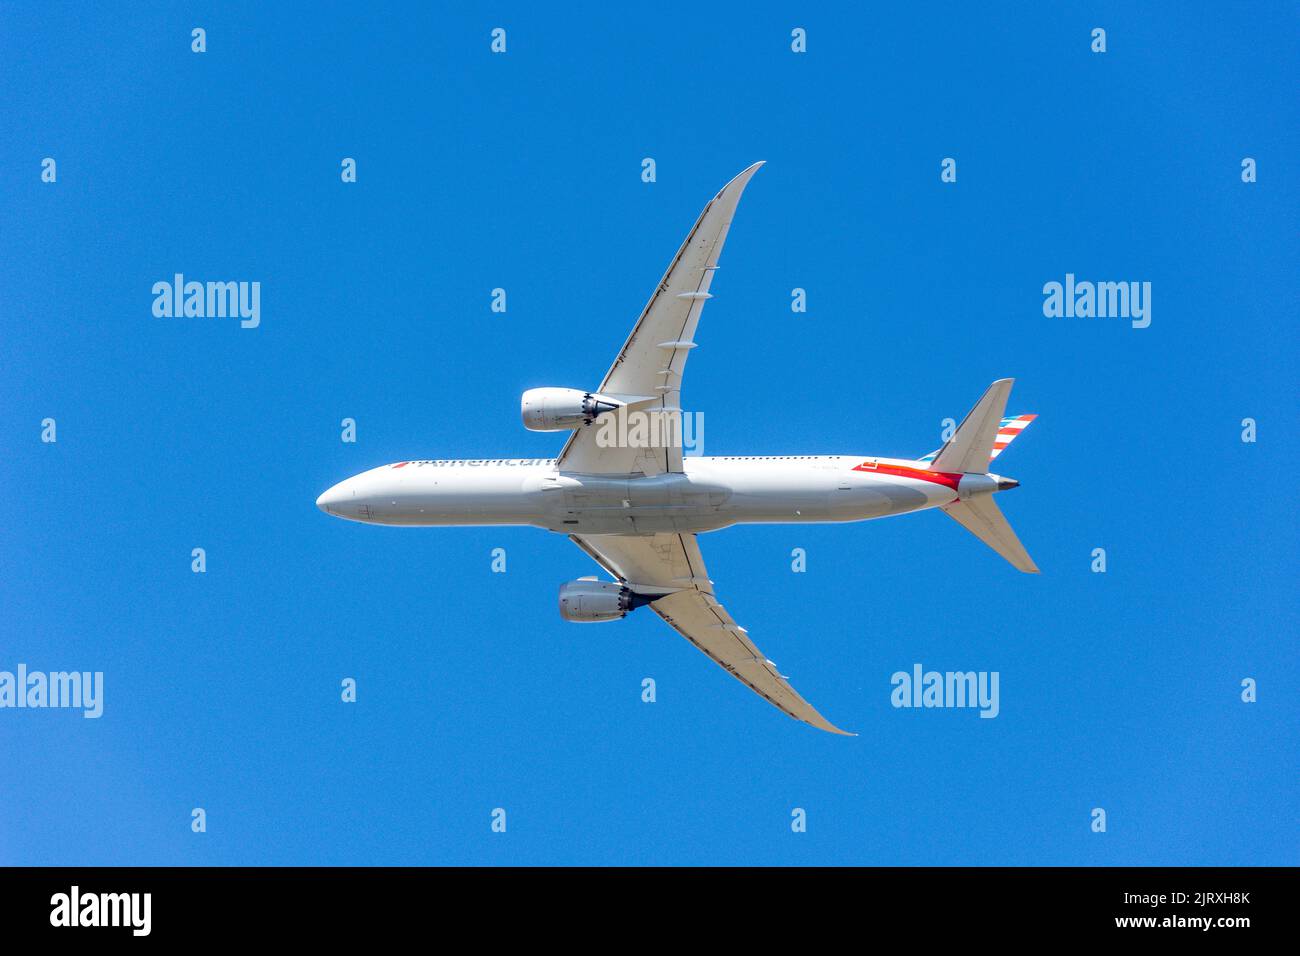 American Airlines Boeing 787-9 Dreamliner-Flugzeuge starten vom Flughafen Heathrow, Greater London, England, Vereinigtes Königreich Stockfoto